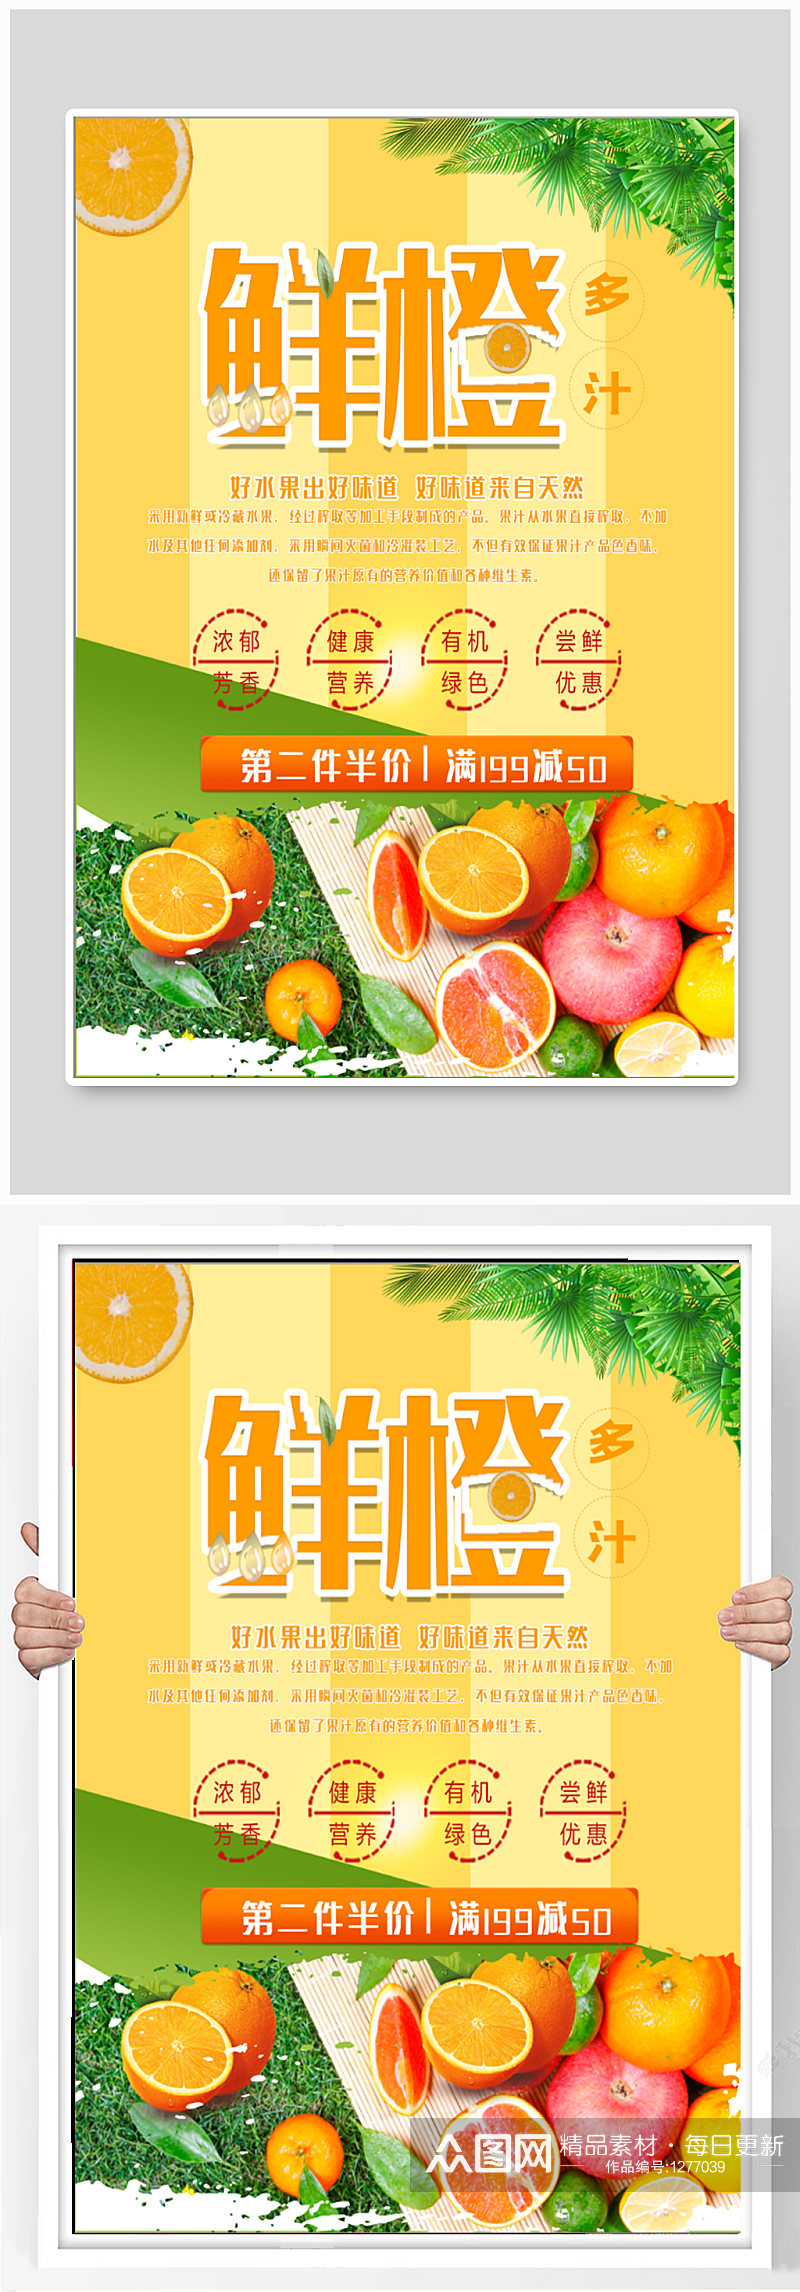 鲜橙水果促销海报素材